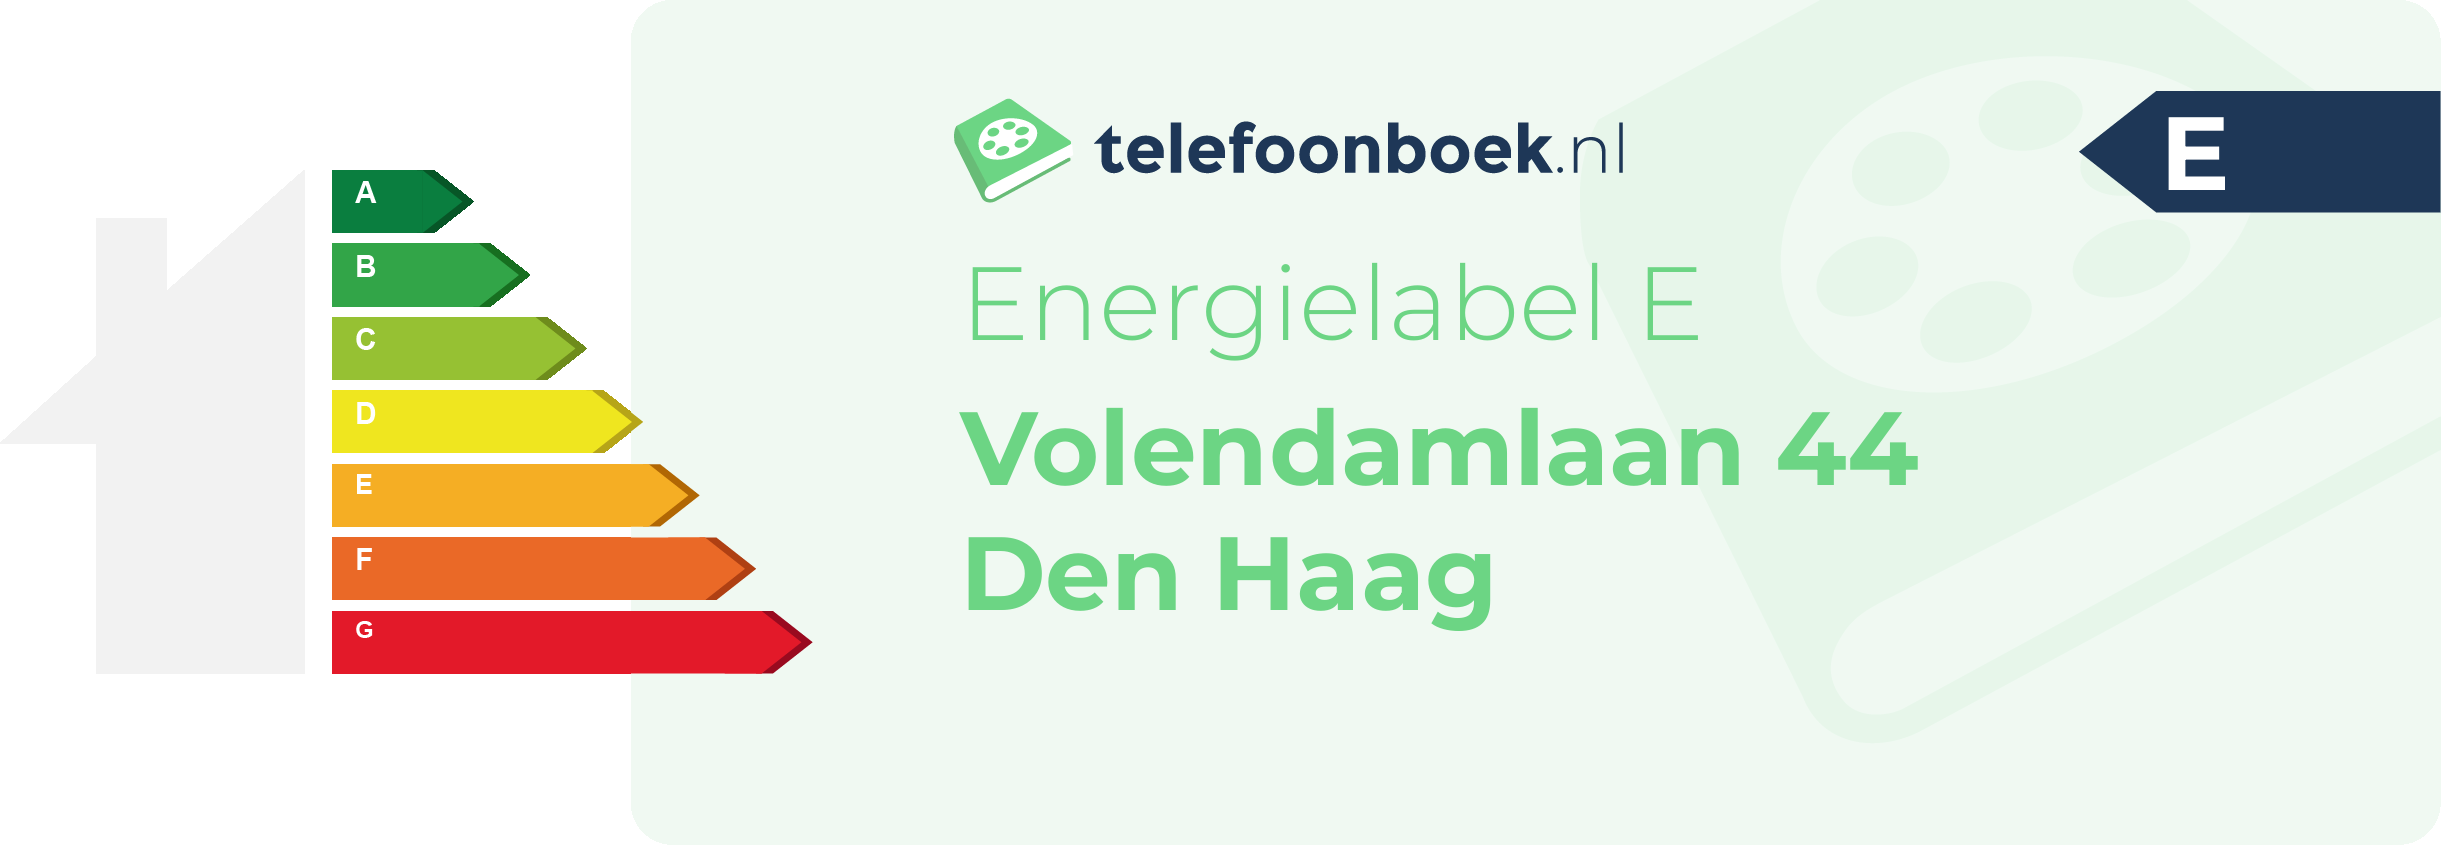 Energielabel Volendamlaan 44 Den Haag